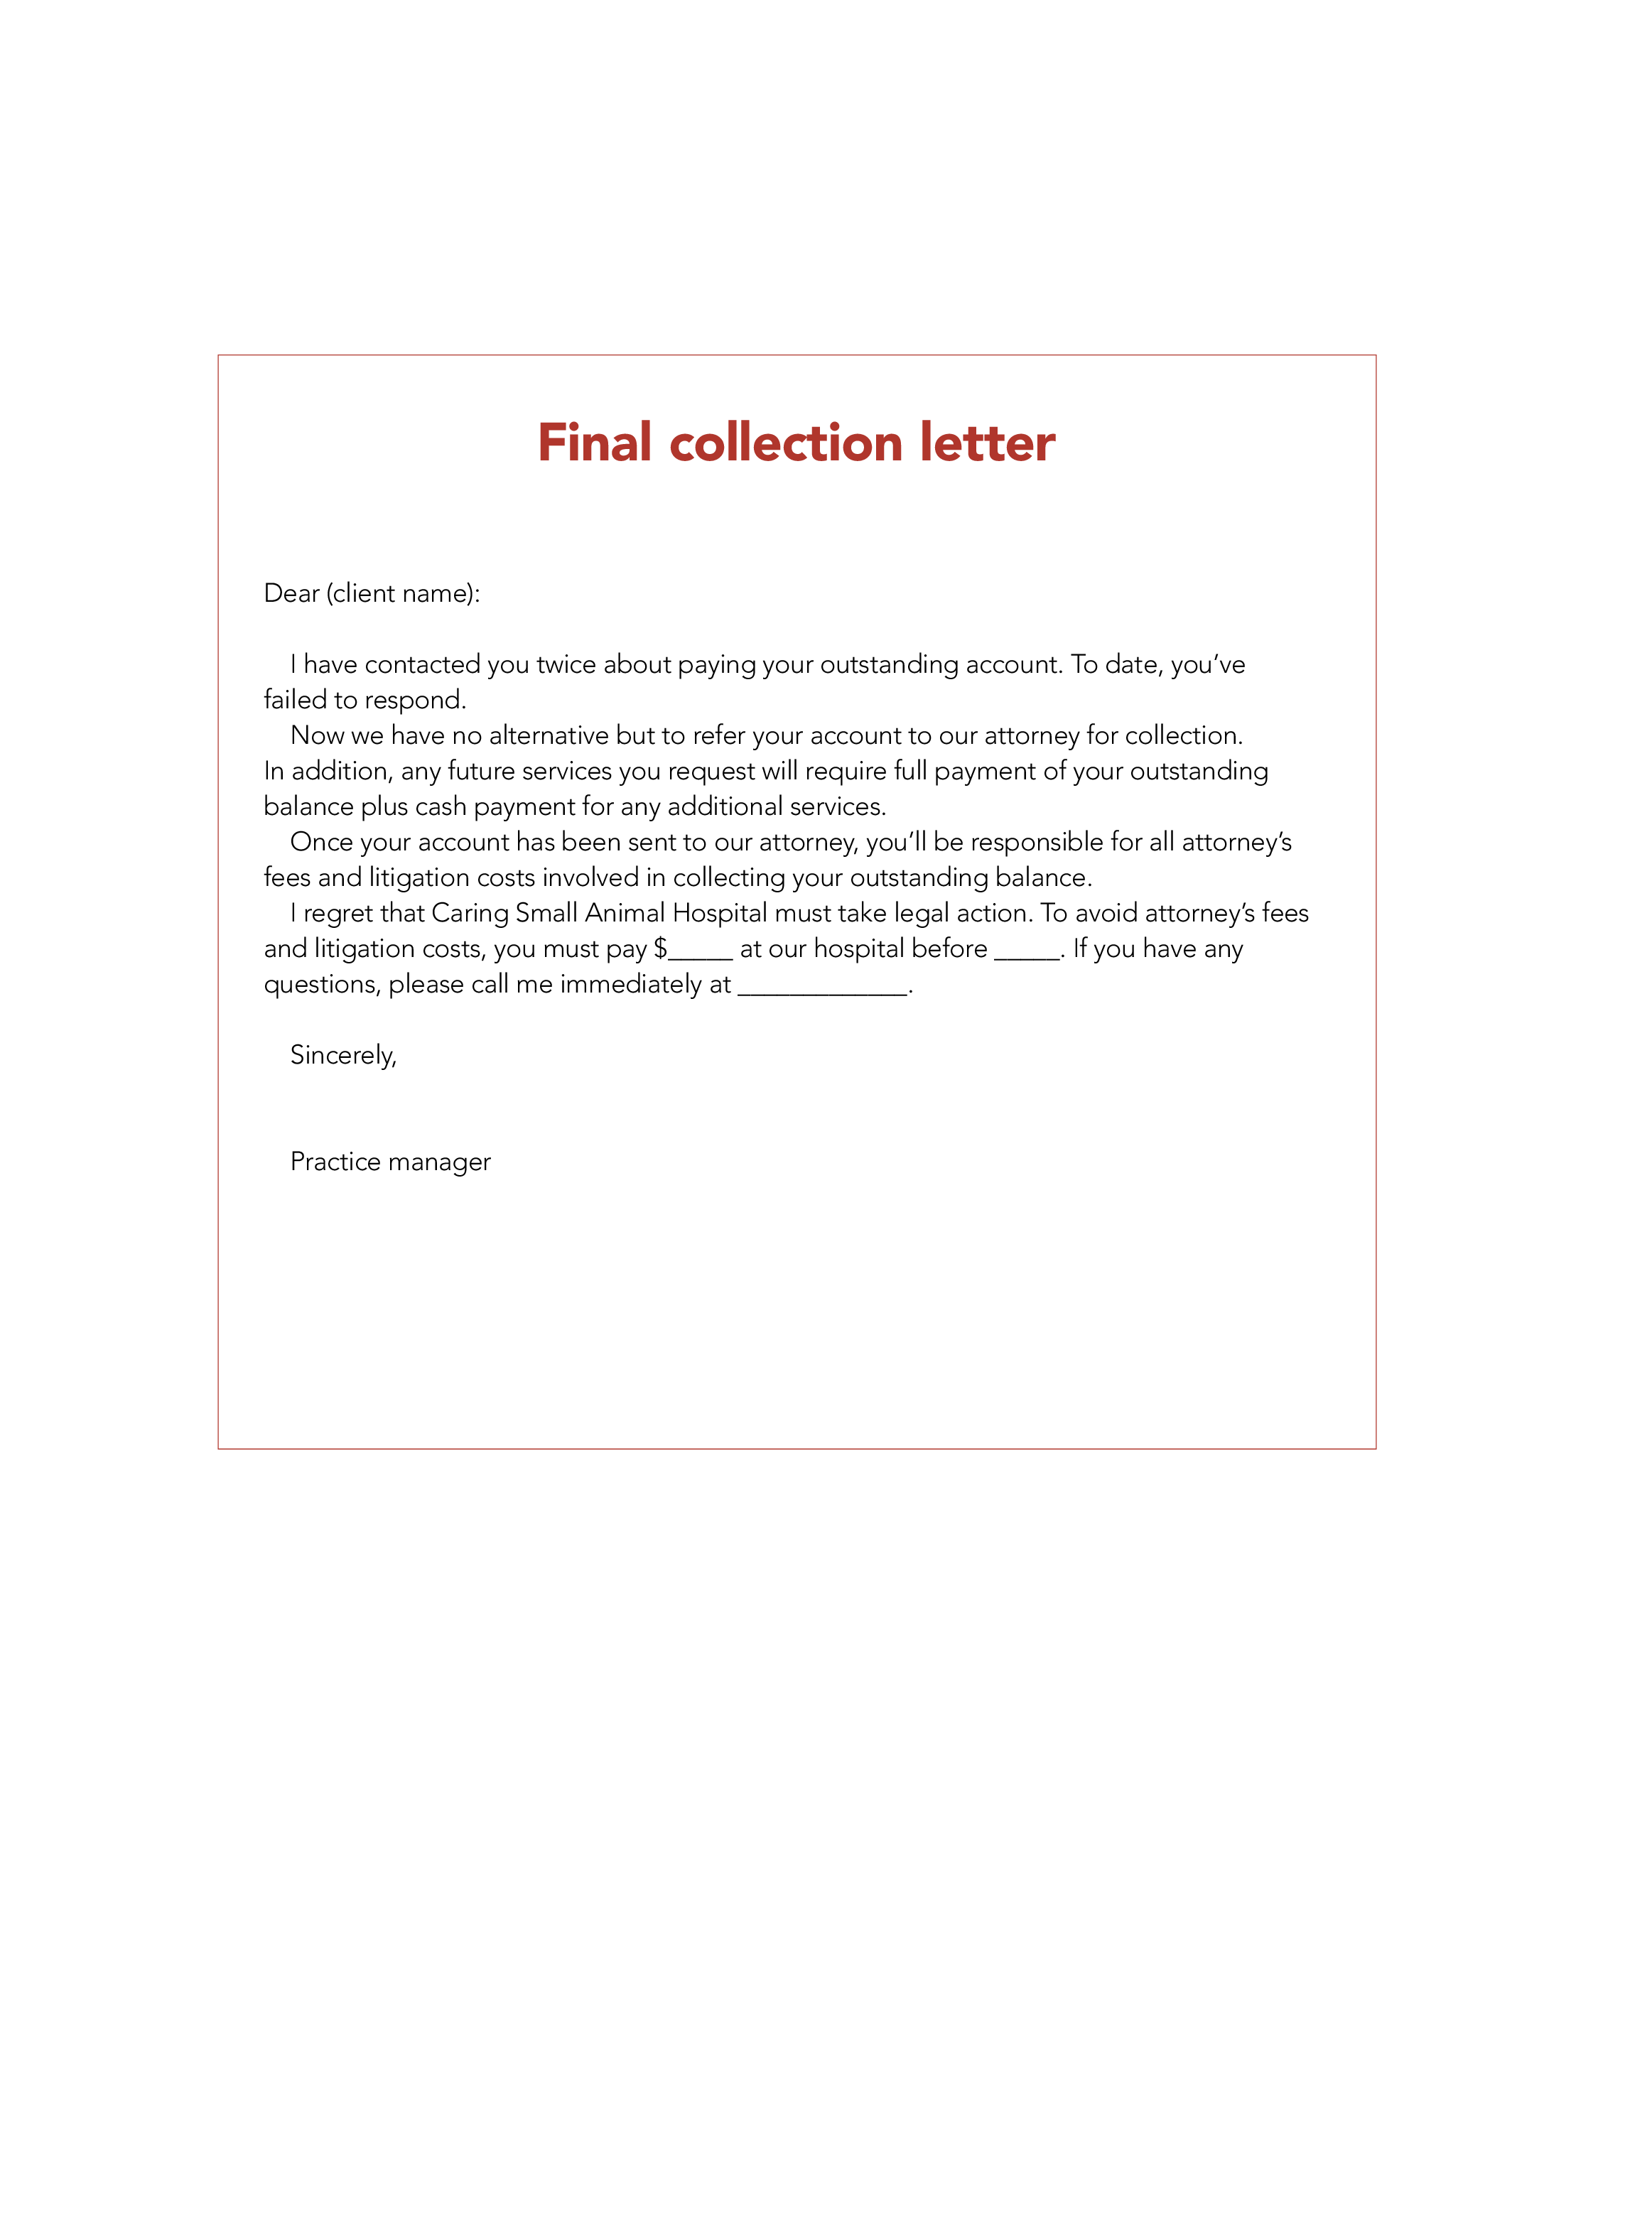 final collection letter modèles